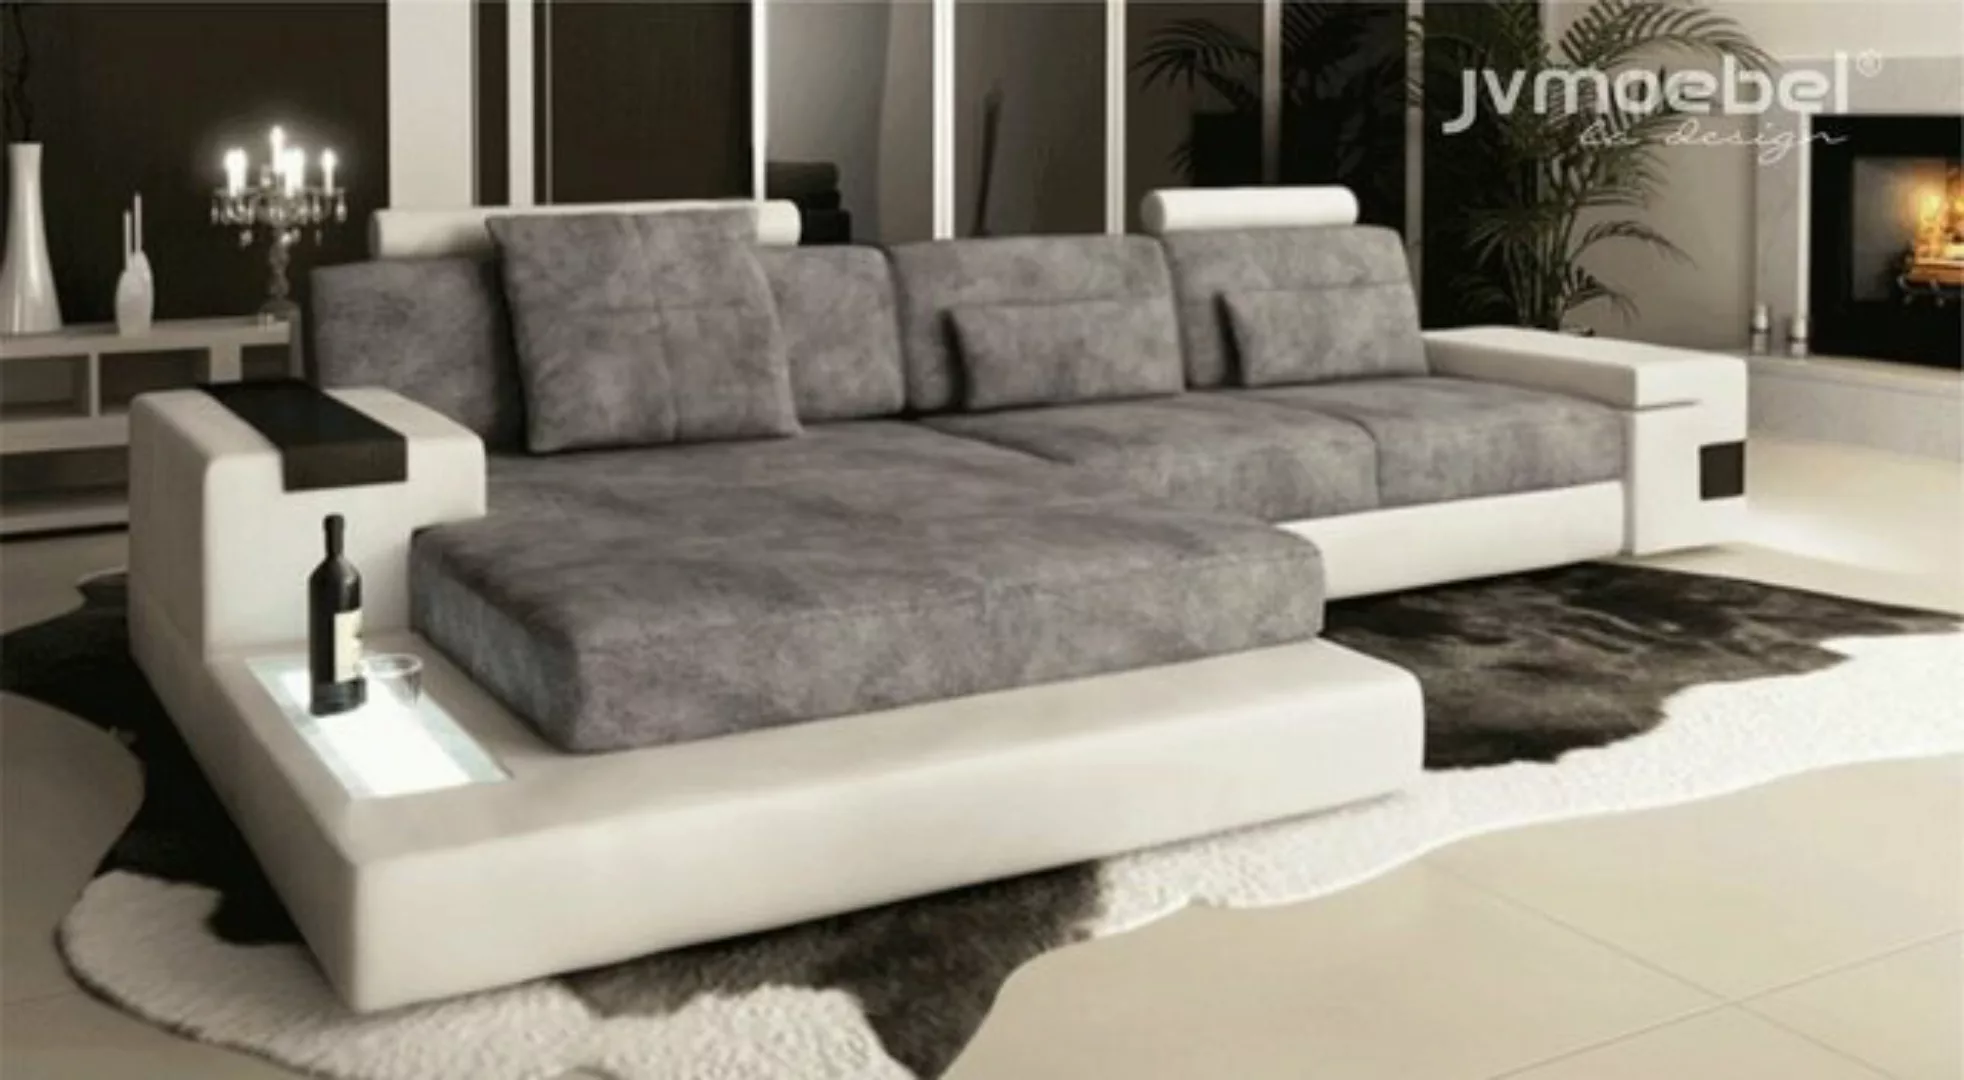 JVmoebel Ecksofa Ecksofa Wohnzimmer L-Form Polster Sofa TextilLeder Design, günstig online kaufen